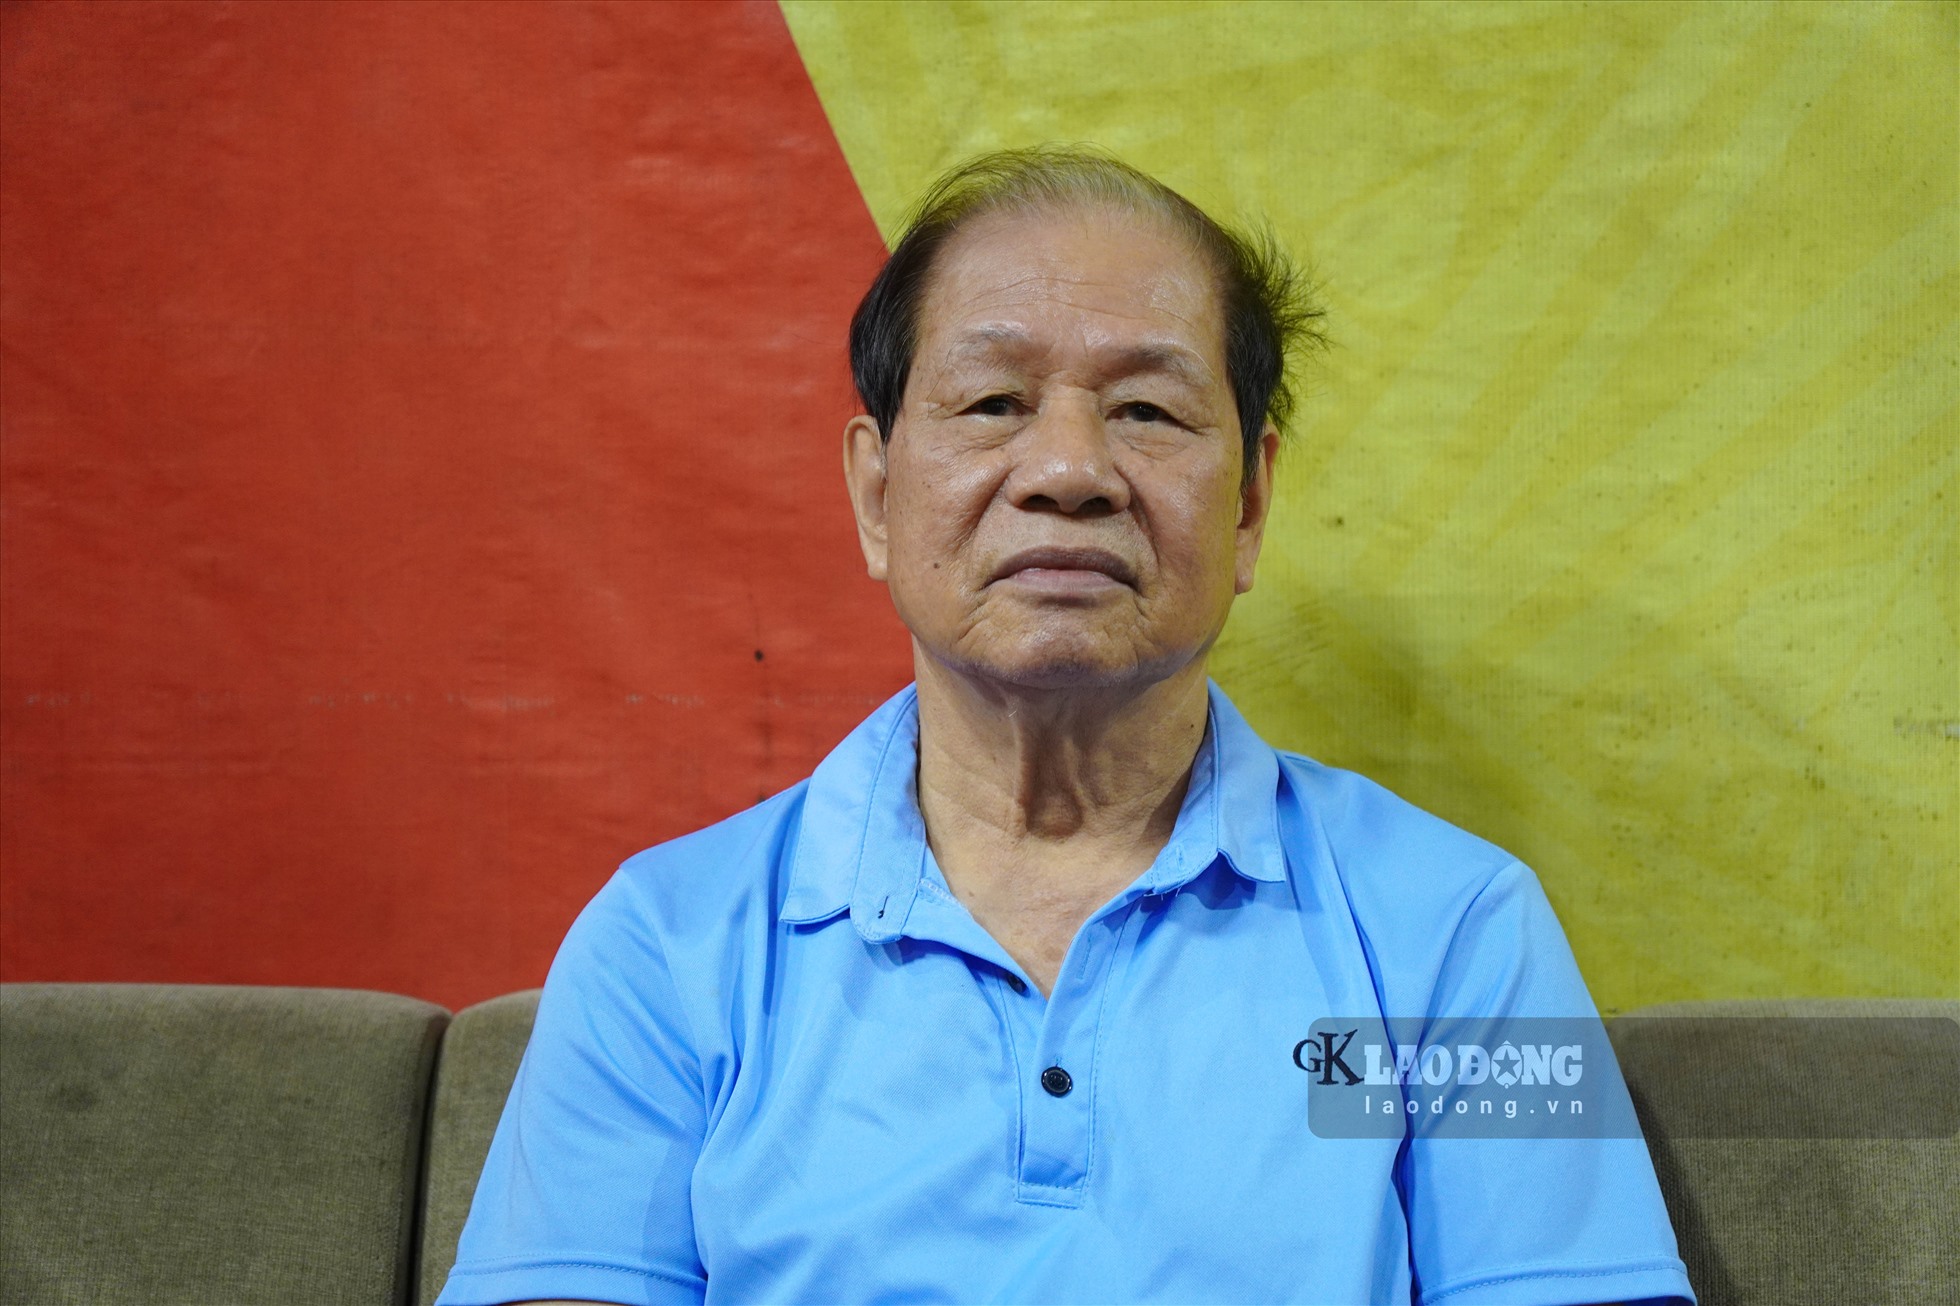 Ông Nguyễn Hồng Quảng (80 tuổi, Trưởng ban quản lý đền Cố Lê) cho biết, ông không khỏi xót xa trước tình trạng xuống cấp nghiêm trọng của ngôi đền trong nhiều năm qua.